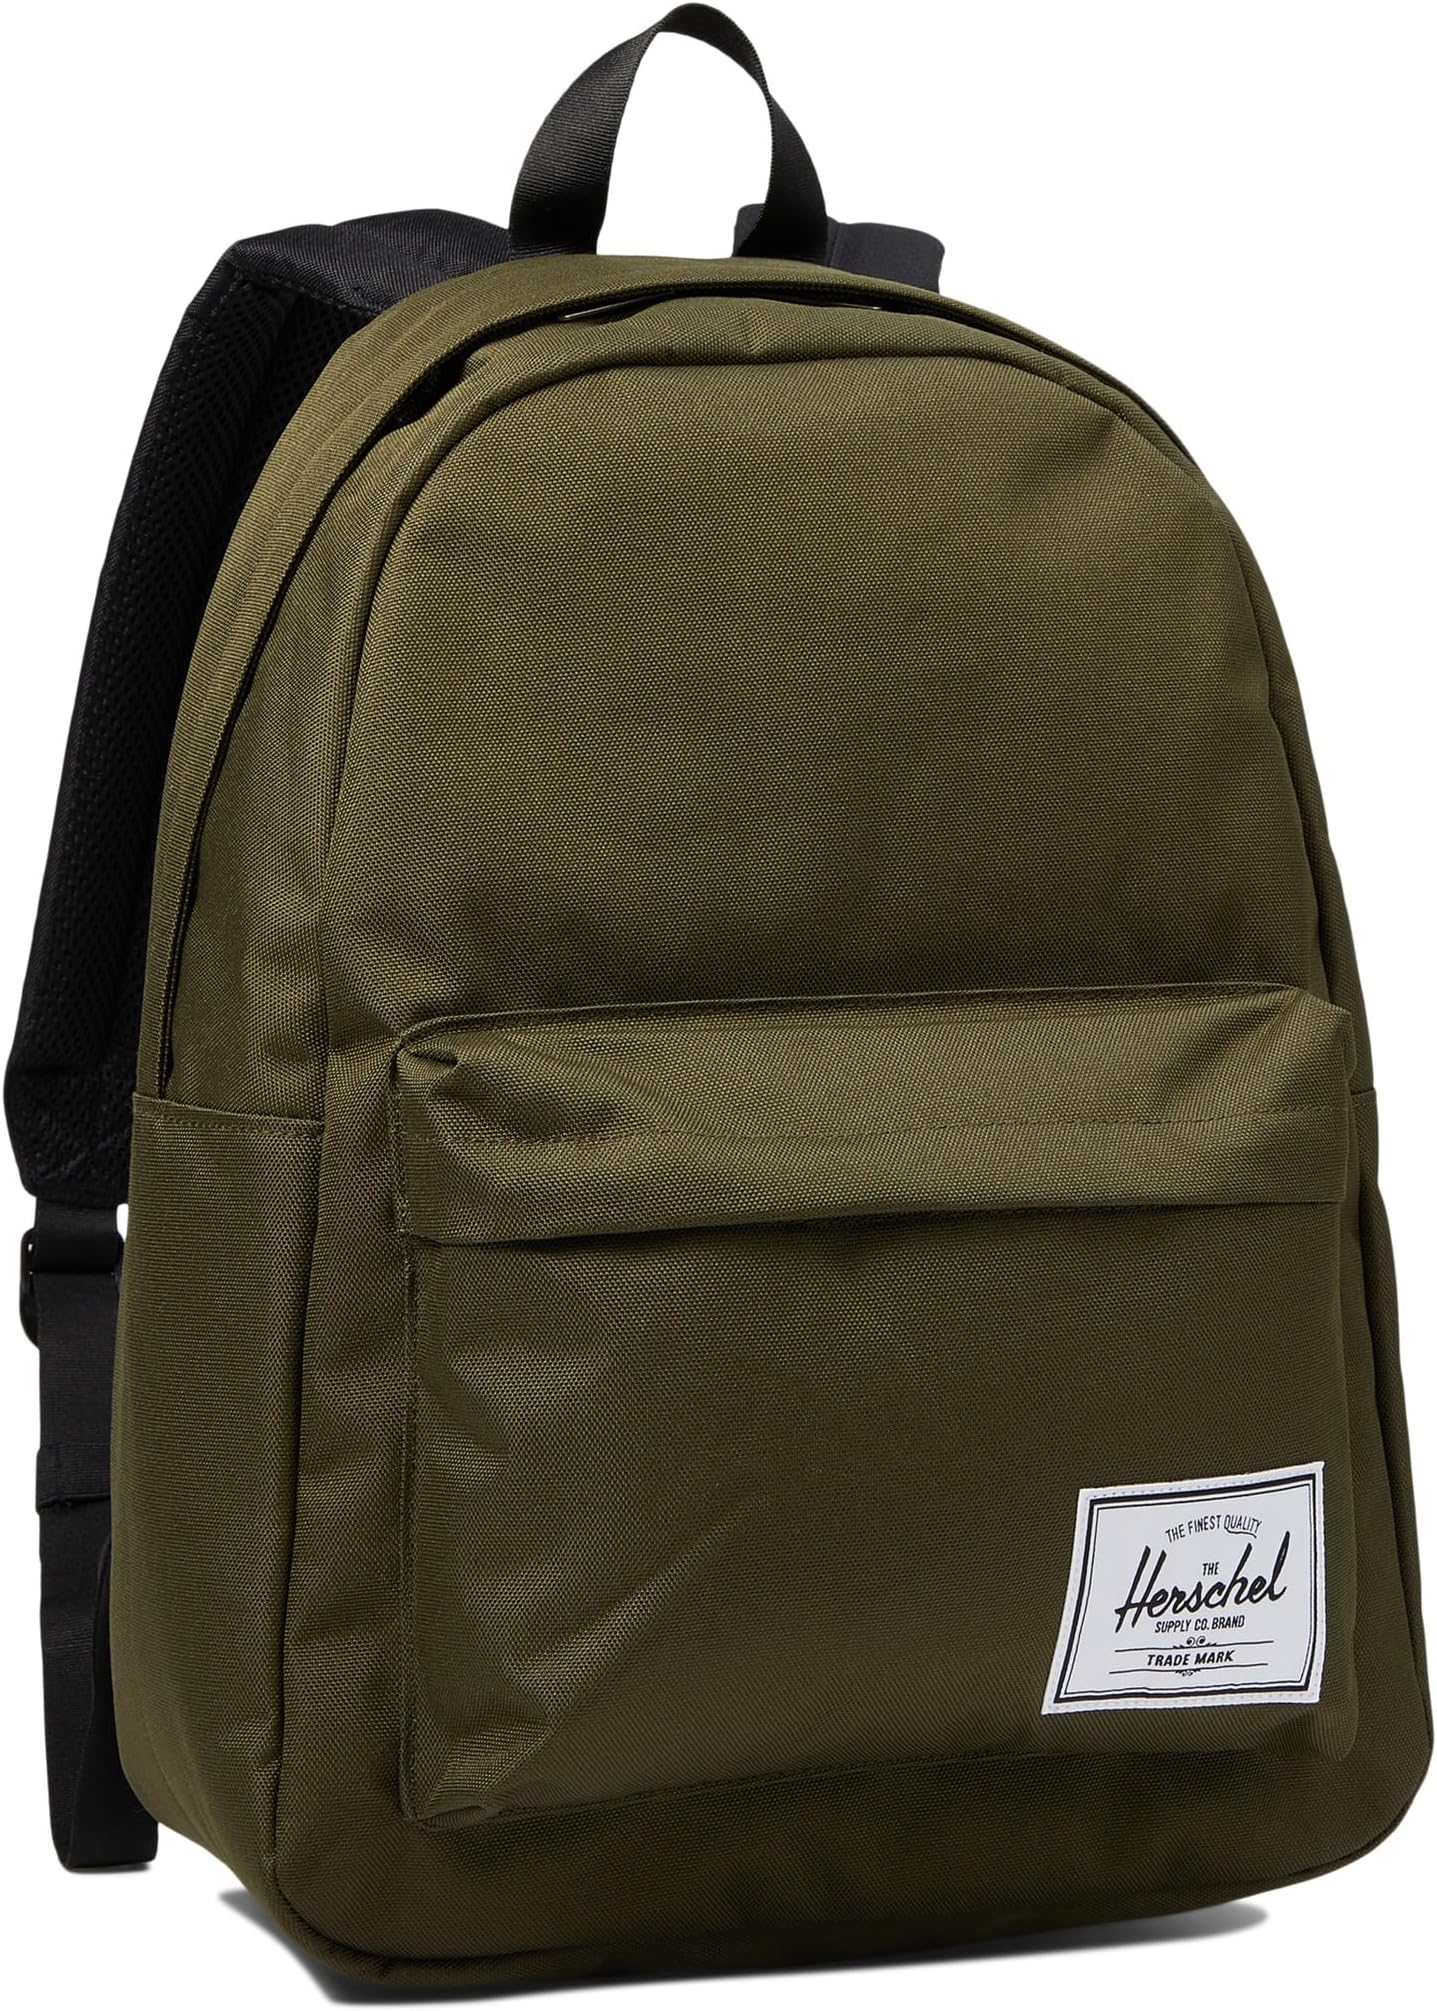 рюкзак retreat backpack herschel supply co цвет ivy green Рюкзак Classic Backpack Herschel Supply Co., цвет Ivy Green